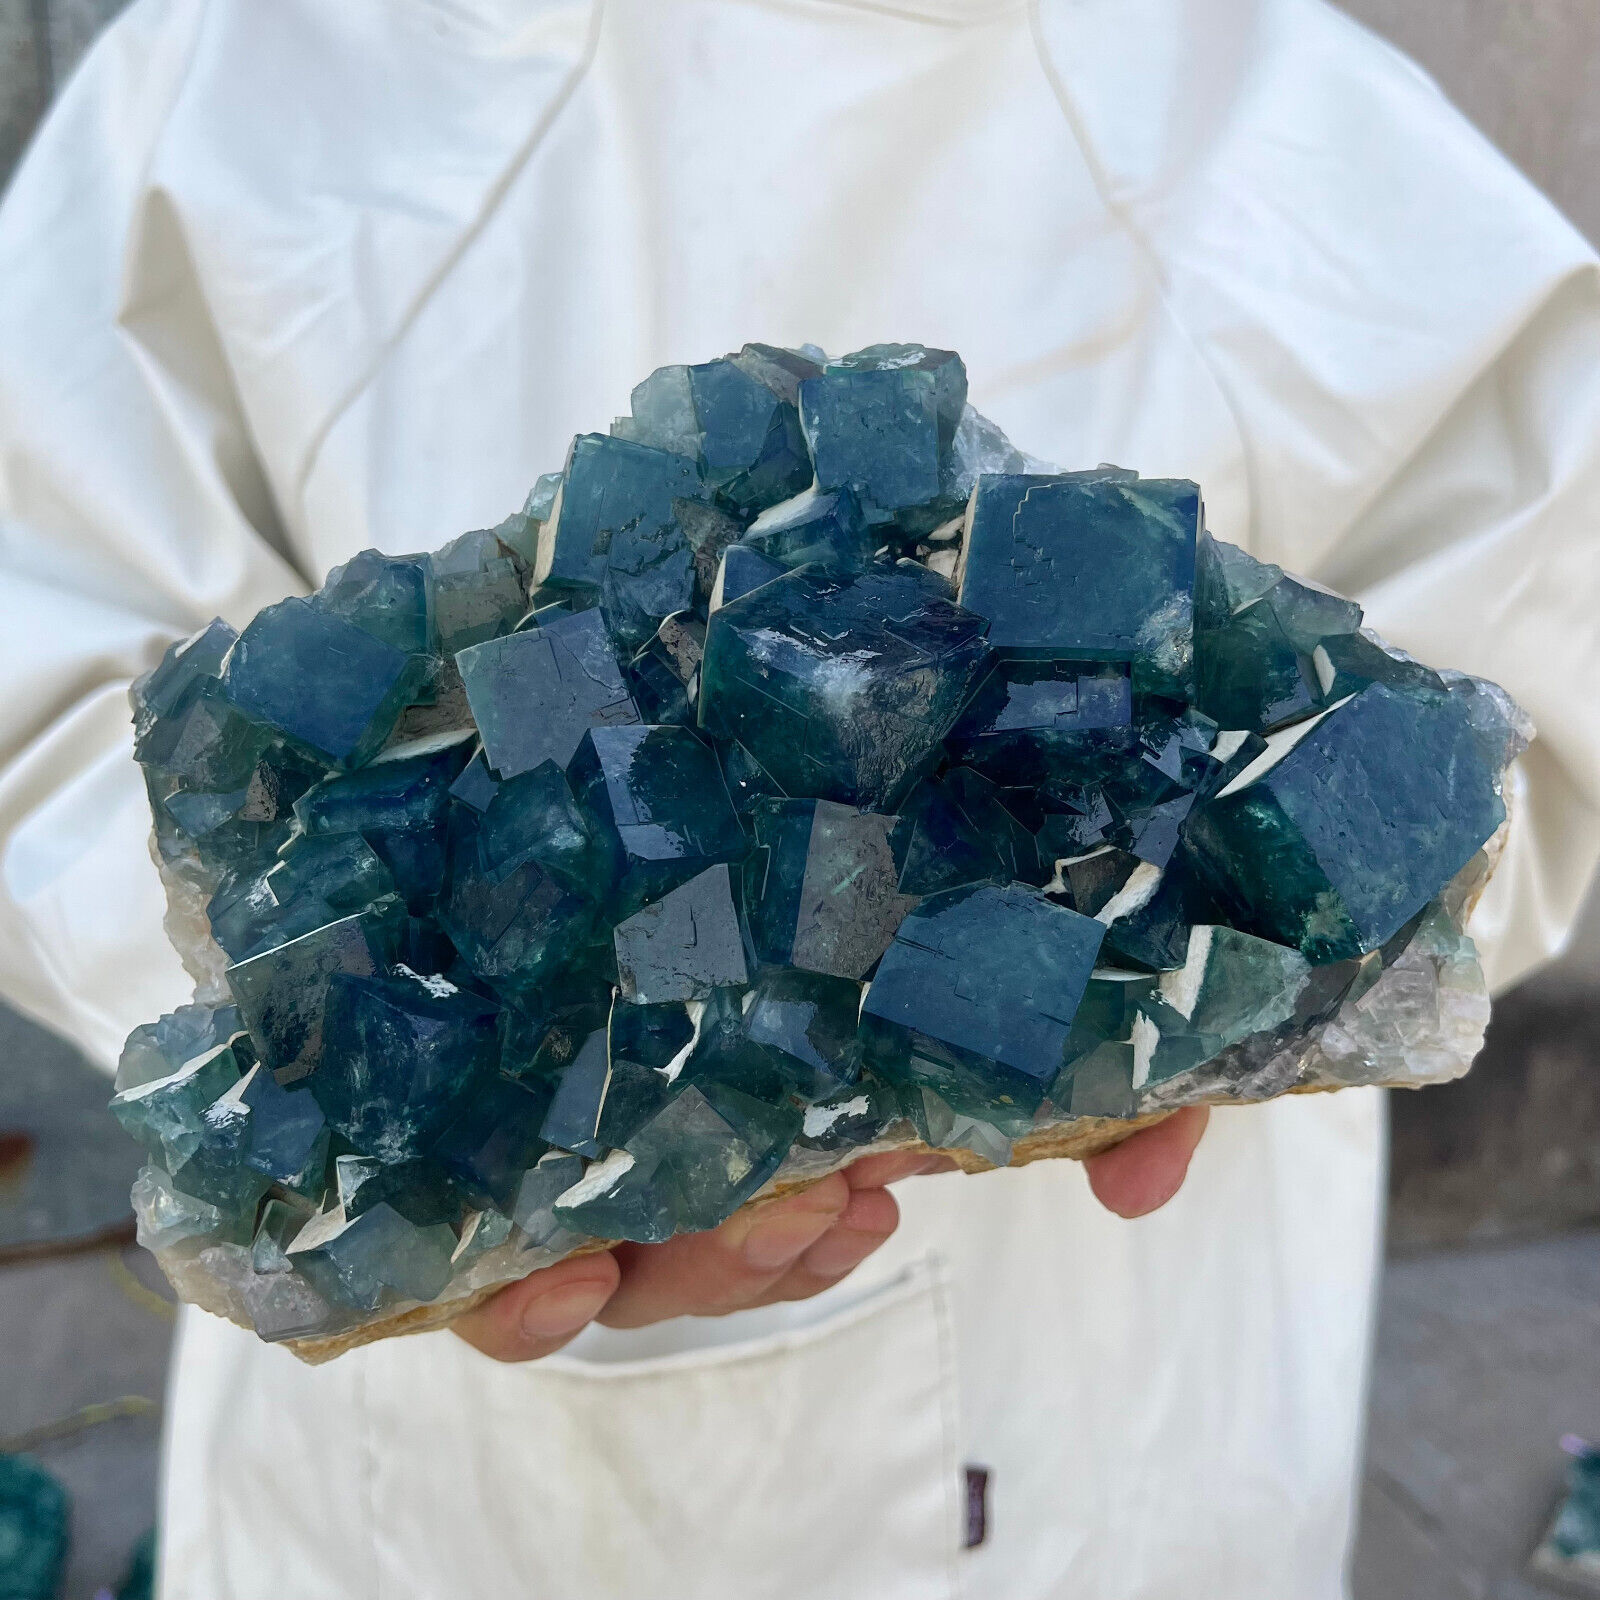 5.5LB Large Natural green cubic fluorite quartz crystal cluster mineral specimen